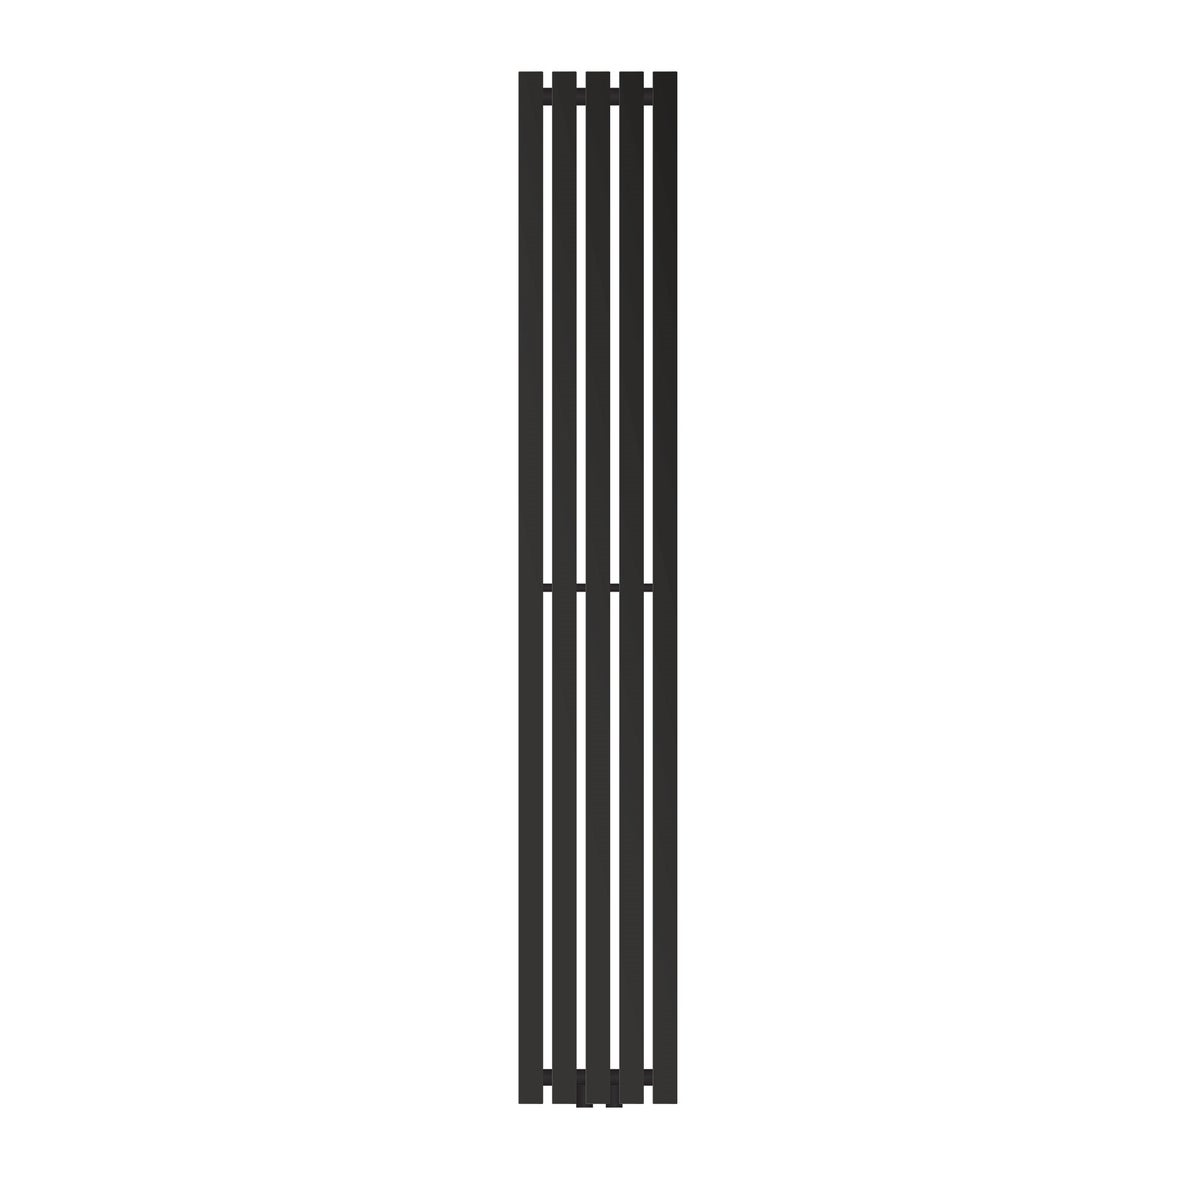 LuxeBath Designheizkörper Stella 1800 x 260 mm, Schwarz matt, Paneelheizkörper mit Mittelanschluss, Einlagig, Flach, Vertikal, Badheizkörper Röhrenheizkörper Bad Flachheizkörper Badezimmer Wandheizung